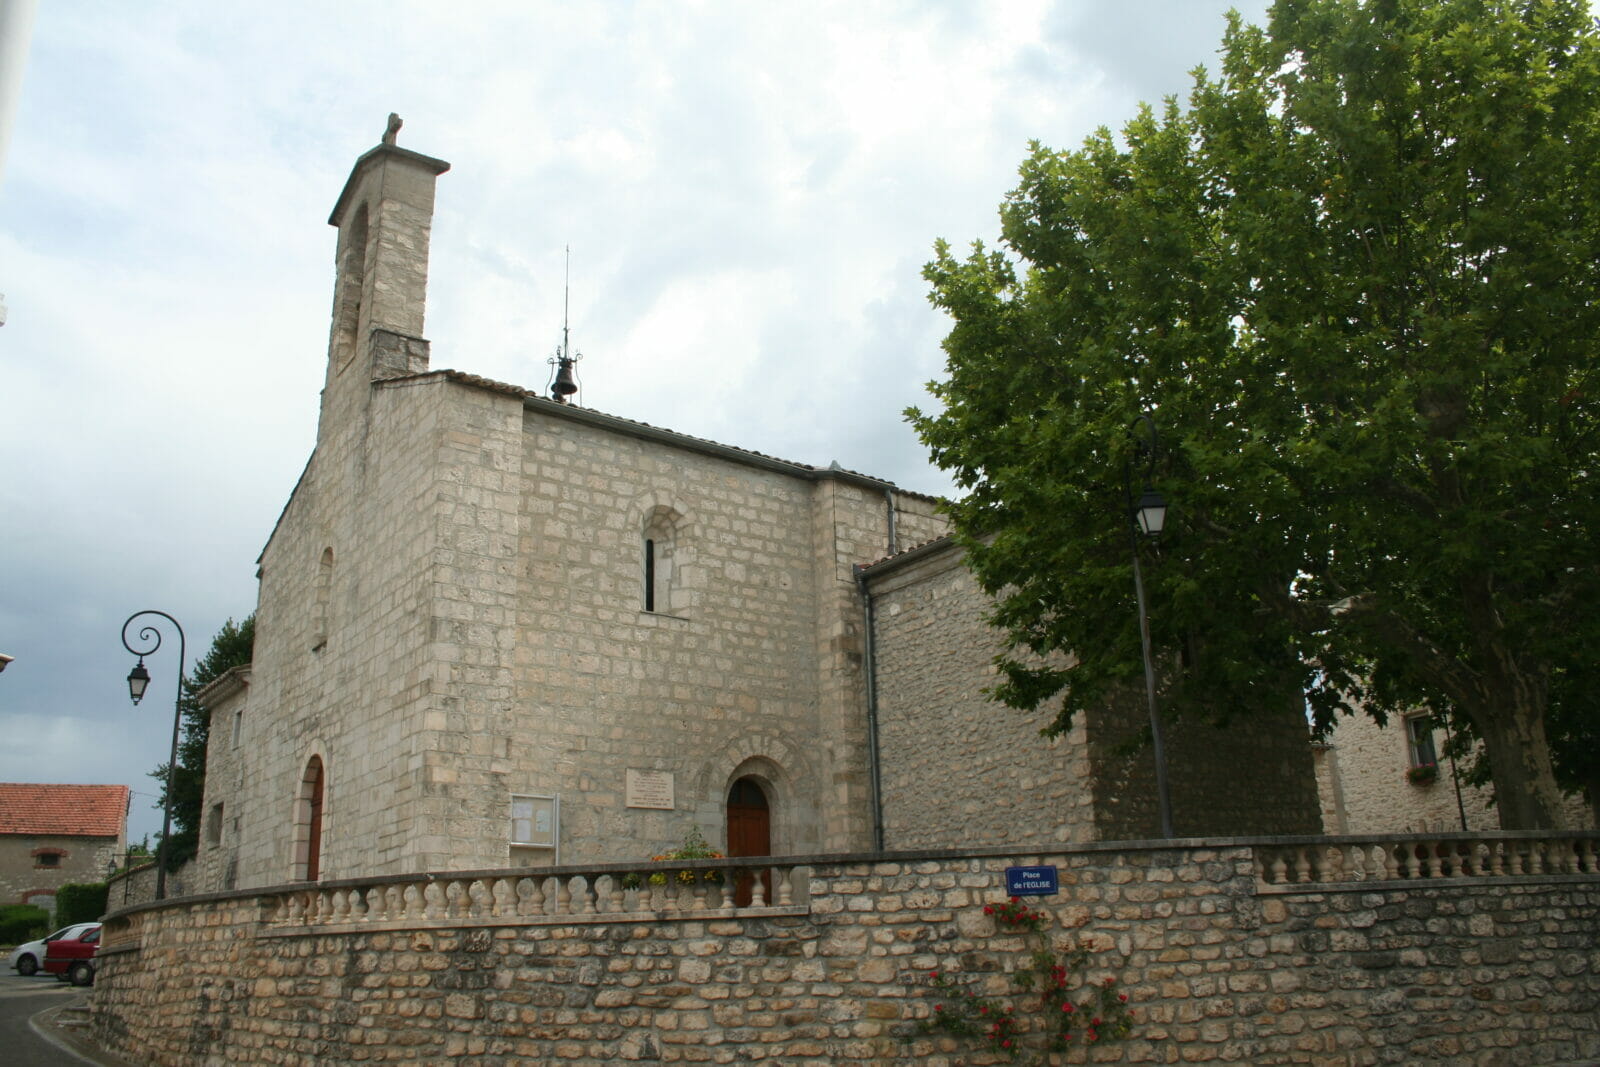 Saint-Privat-des-Vieux